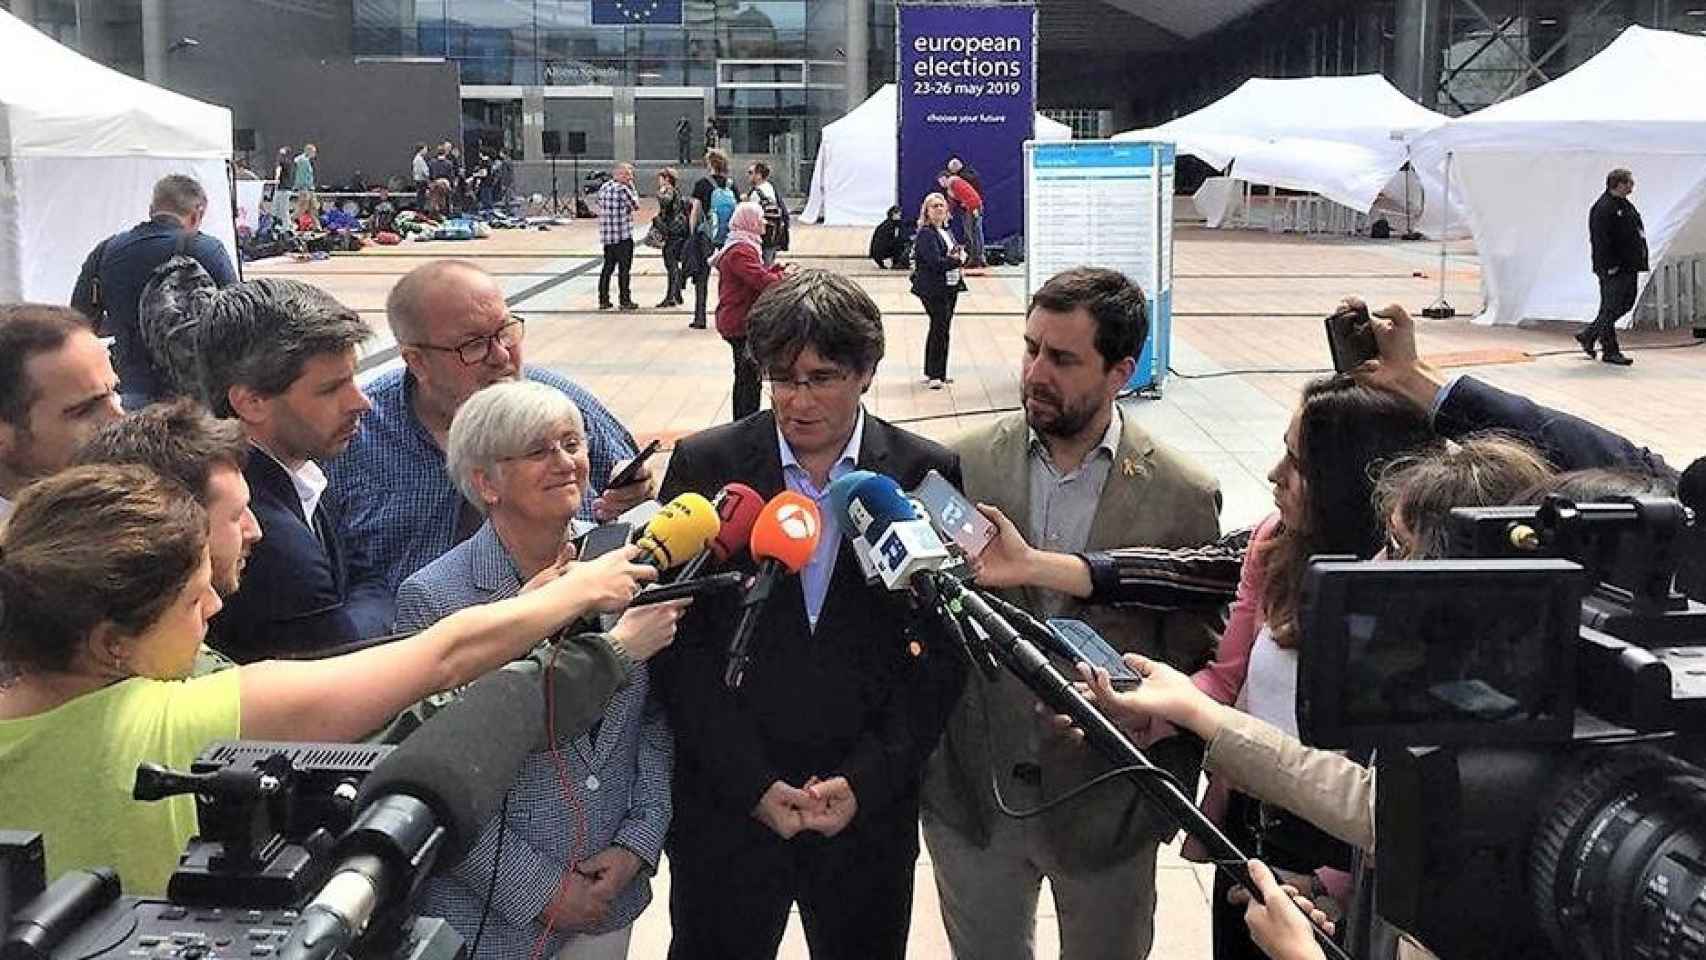 Clara Ponsatí, Carles Puigdemont y Toni Comín (JxCat) ante el Parlamento Europeo el día de las elecciones europeas 2019 / EP